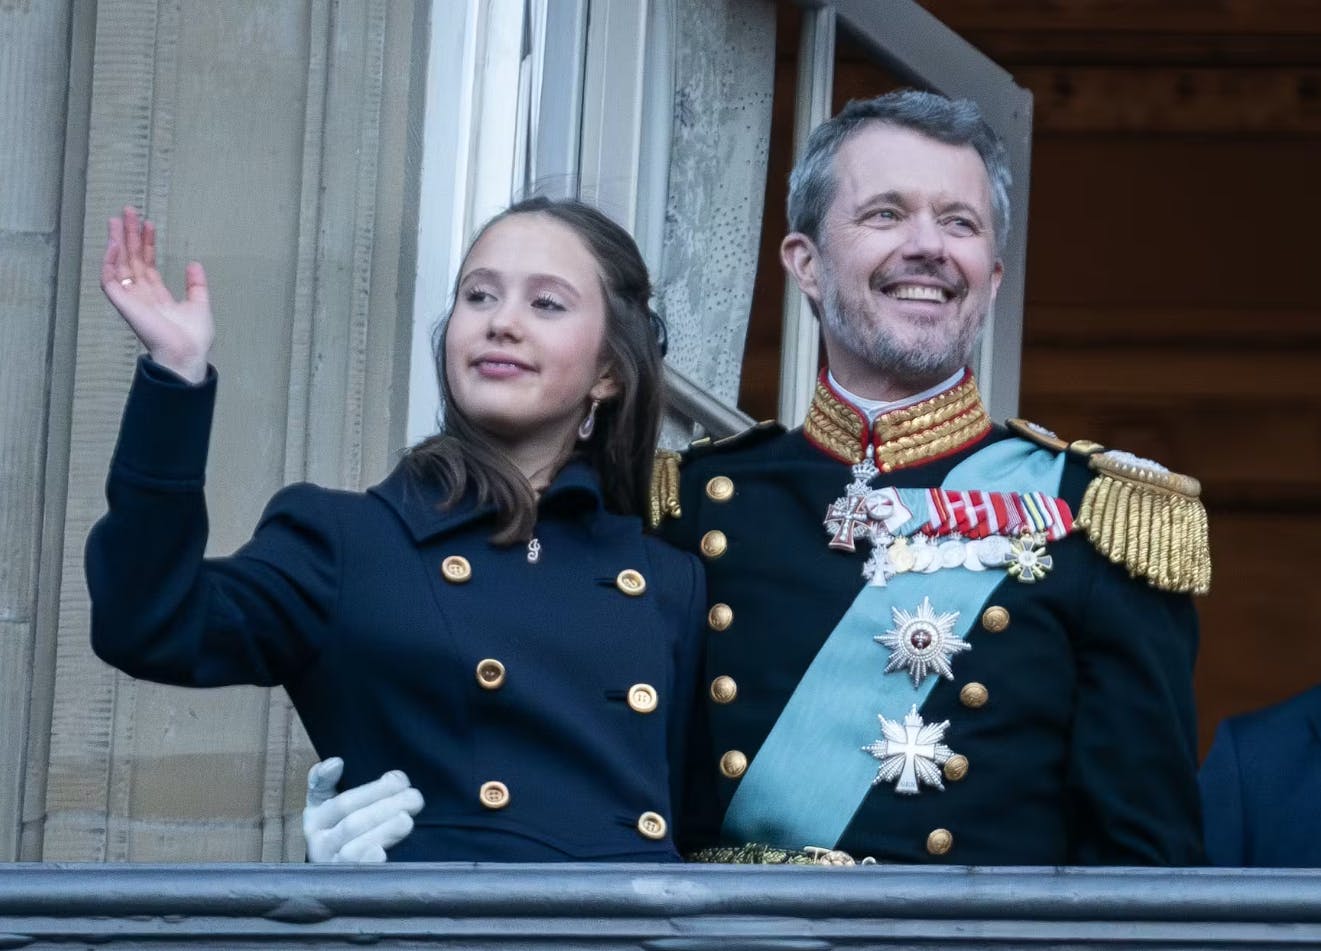 Prinsesse Josephine med sin far, kong Frederik, på balkonen på Christiansborg Slot.